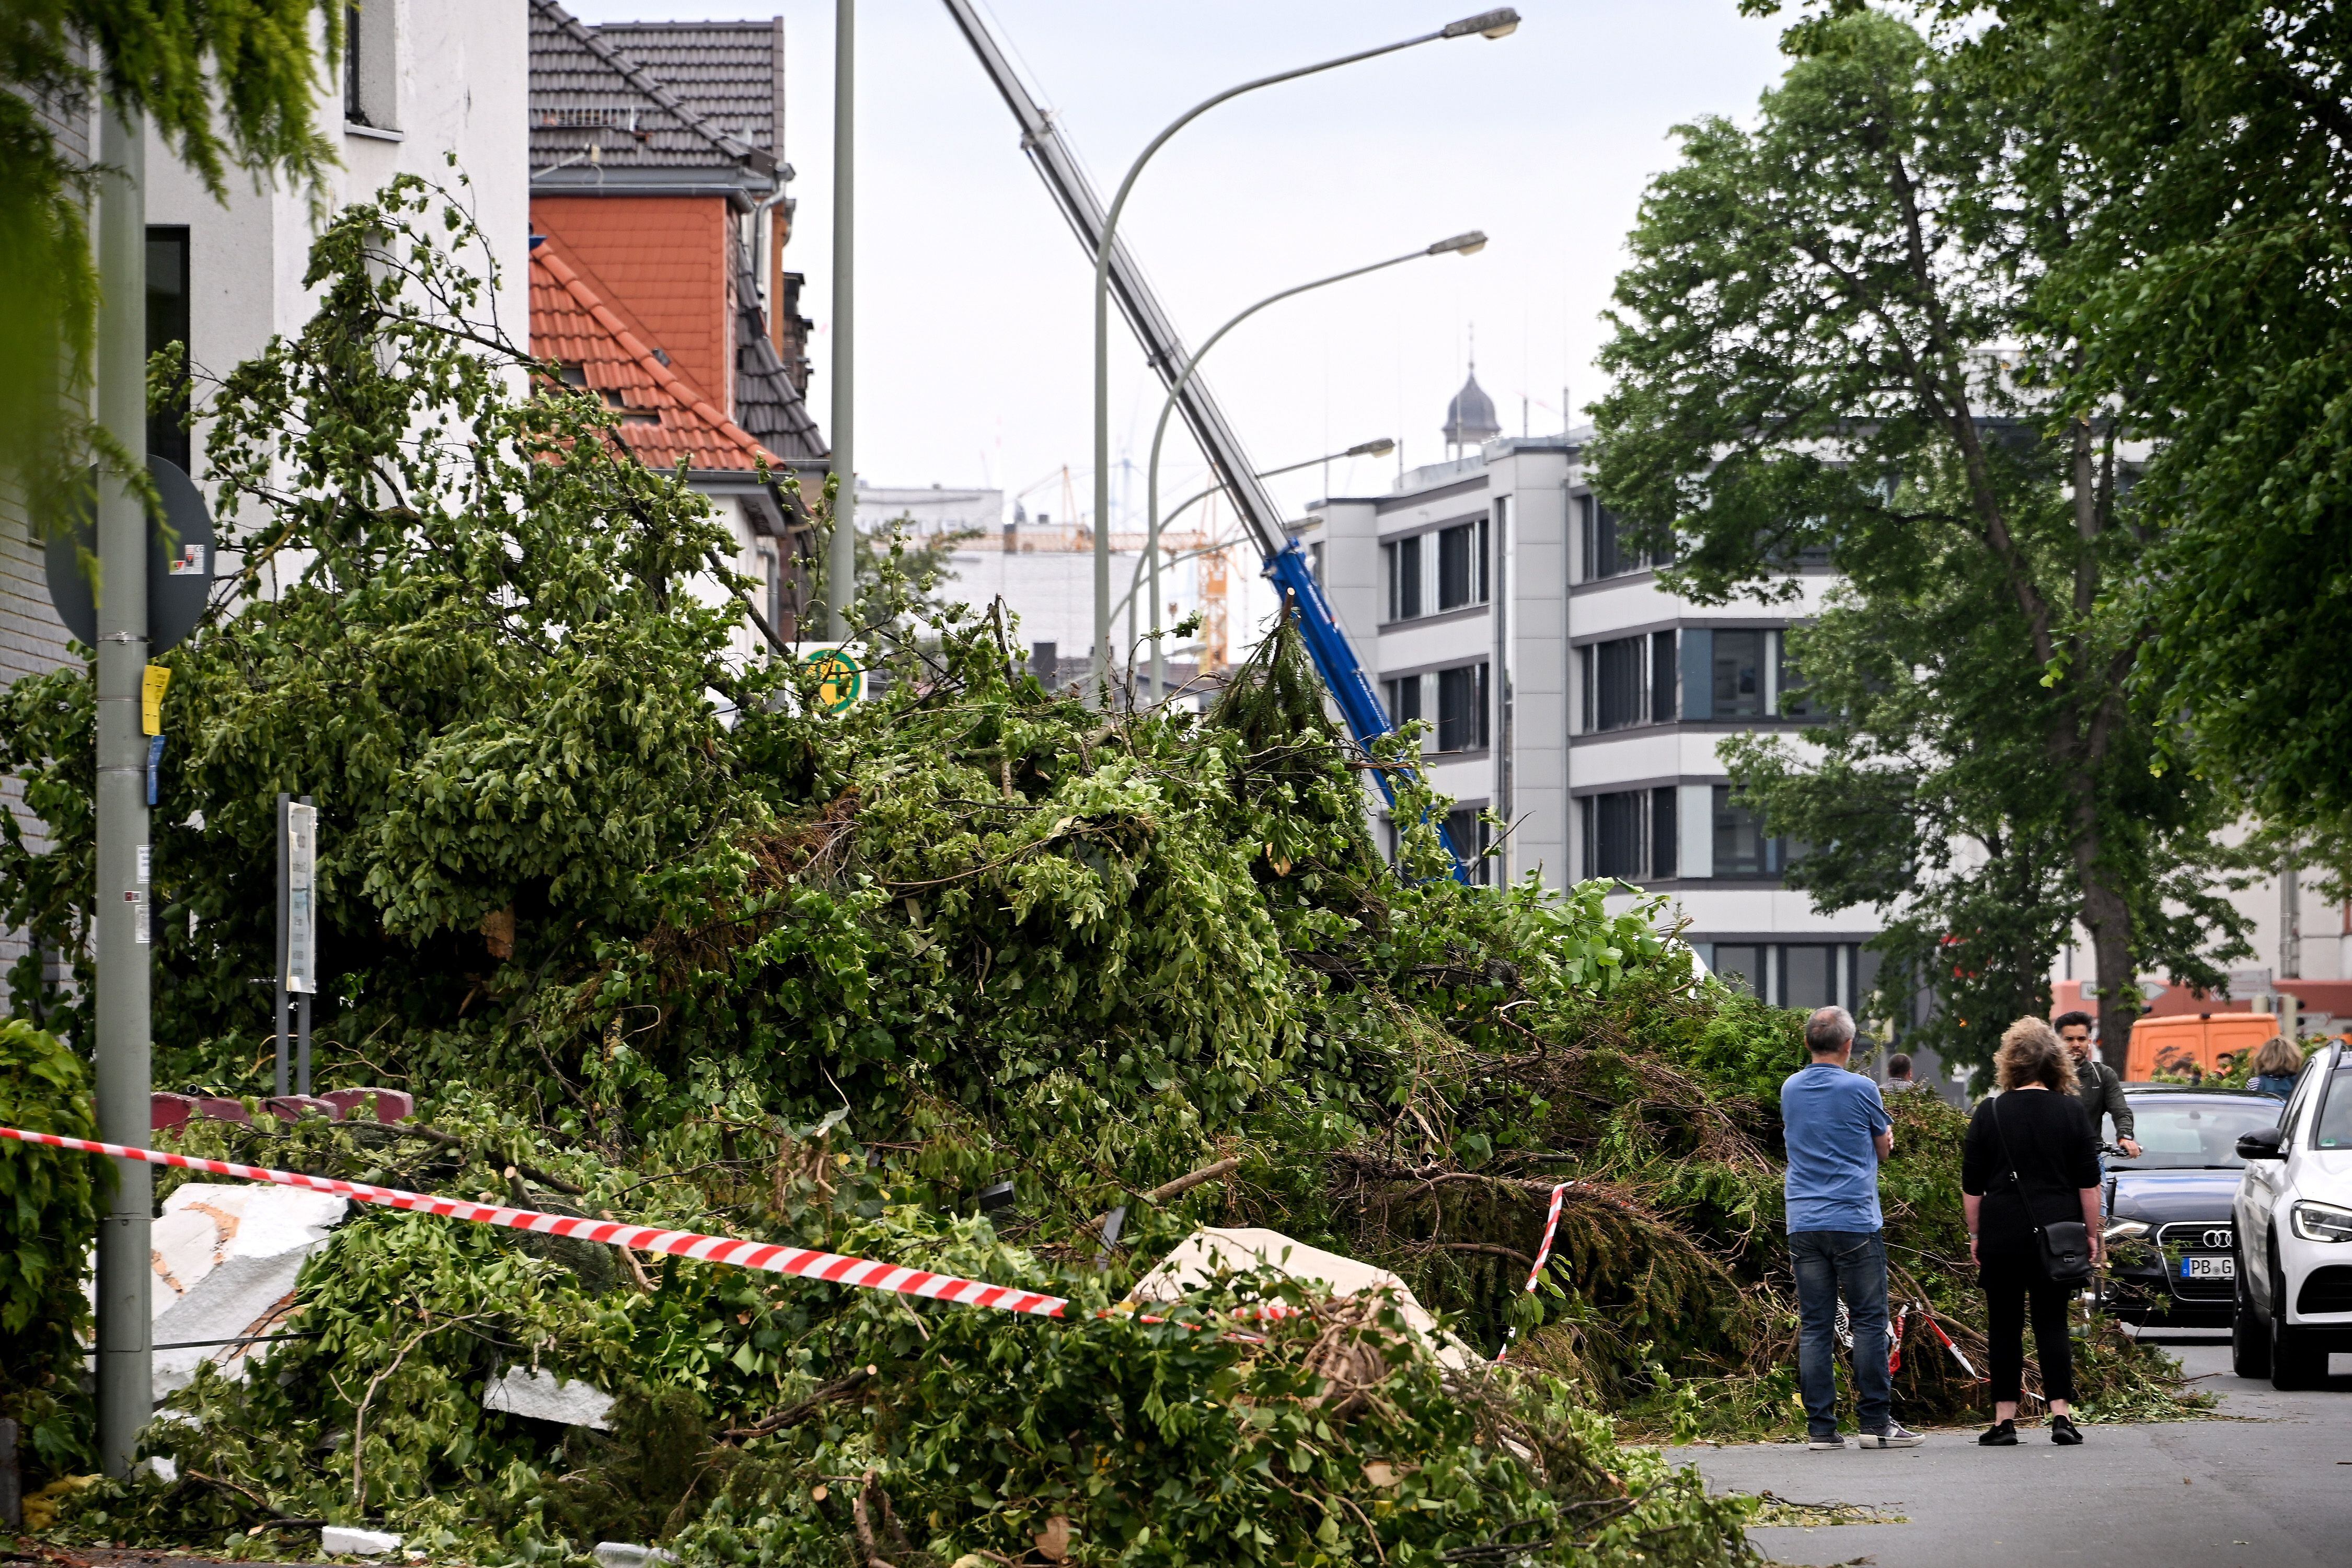 Los escombros, los techos dañados y los árboles caídos se ven en Paderborn, Alemania, el 21 de mayo de 2022, después de que lo que se informó como un 'tornado' dejó una franja de destrucción en la parte oriental del estado de Renania del Norte-Westfalia. EFE/EPA/SASCHA STEINBACH